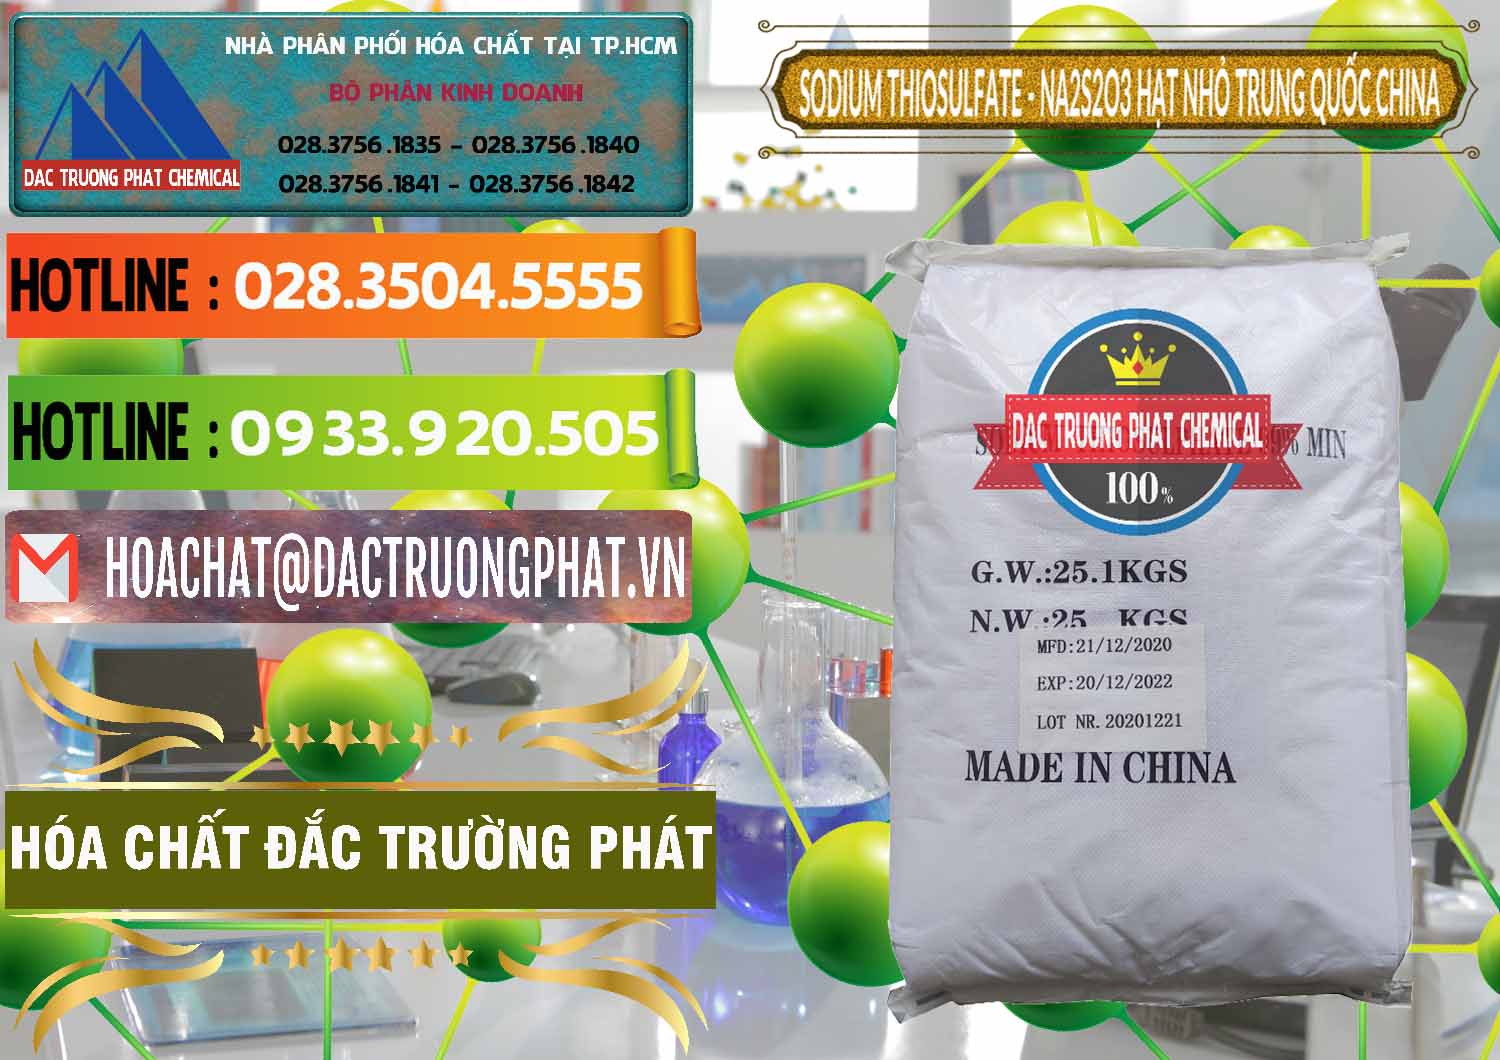 Cty cung cấp & bán Sodium Thiosulfate - NA2S2O3 Hạt Nhỏ Trung Quốc China - 0204 - Cty cung ứng & phân phối hóa chất tại TP.HCM - cungcaphoachat.com.vn